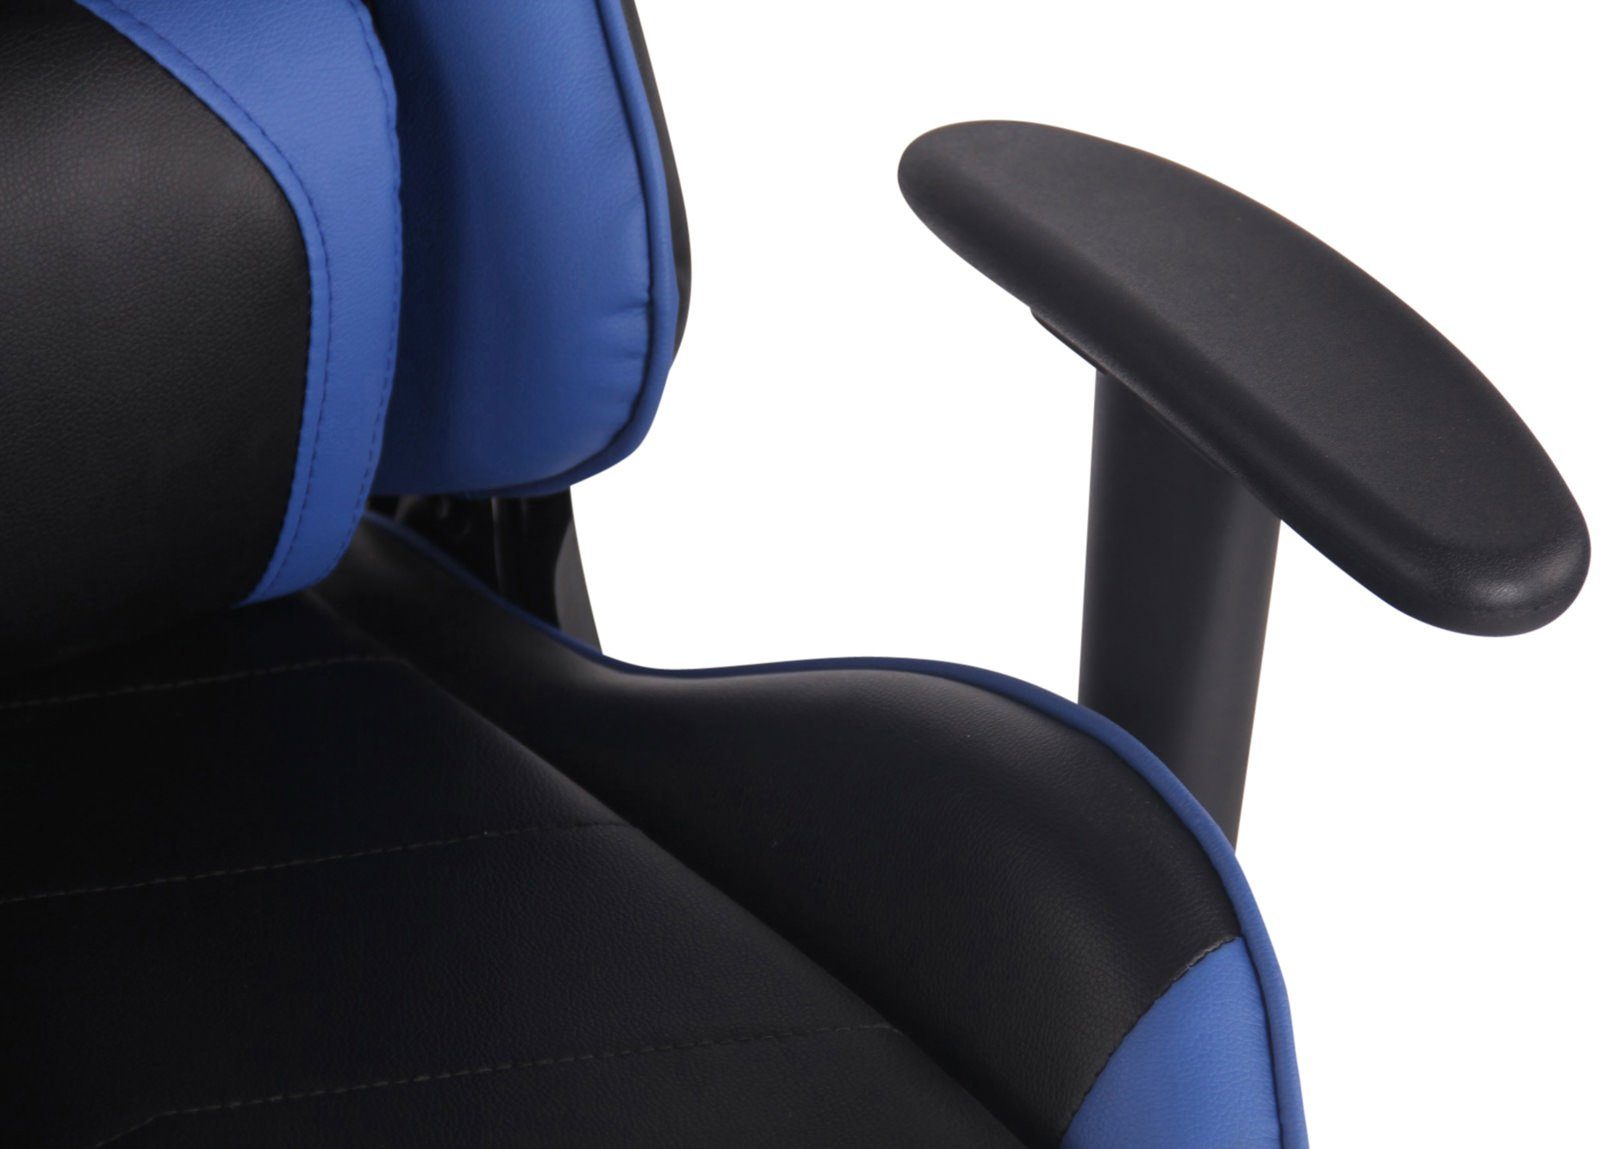 Höhenverstellbar Gaming mit CLP Fußablage, Chair und drehbar Turbo